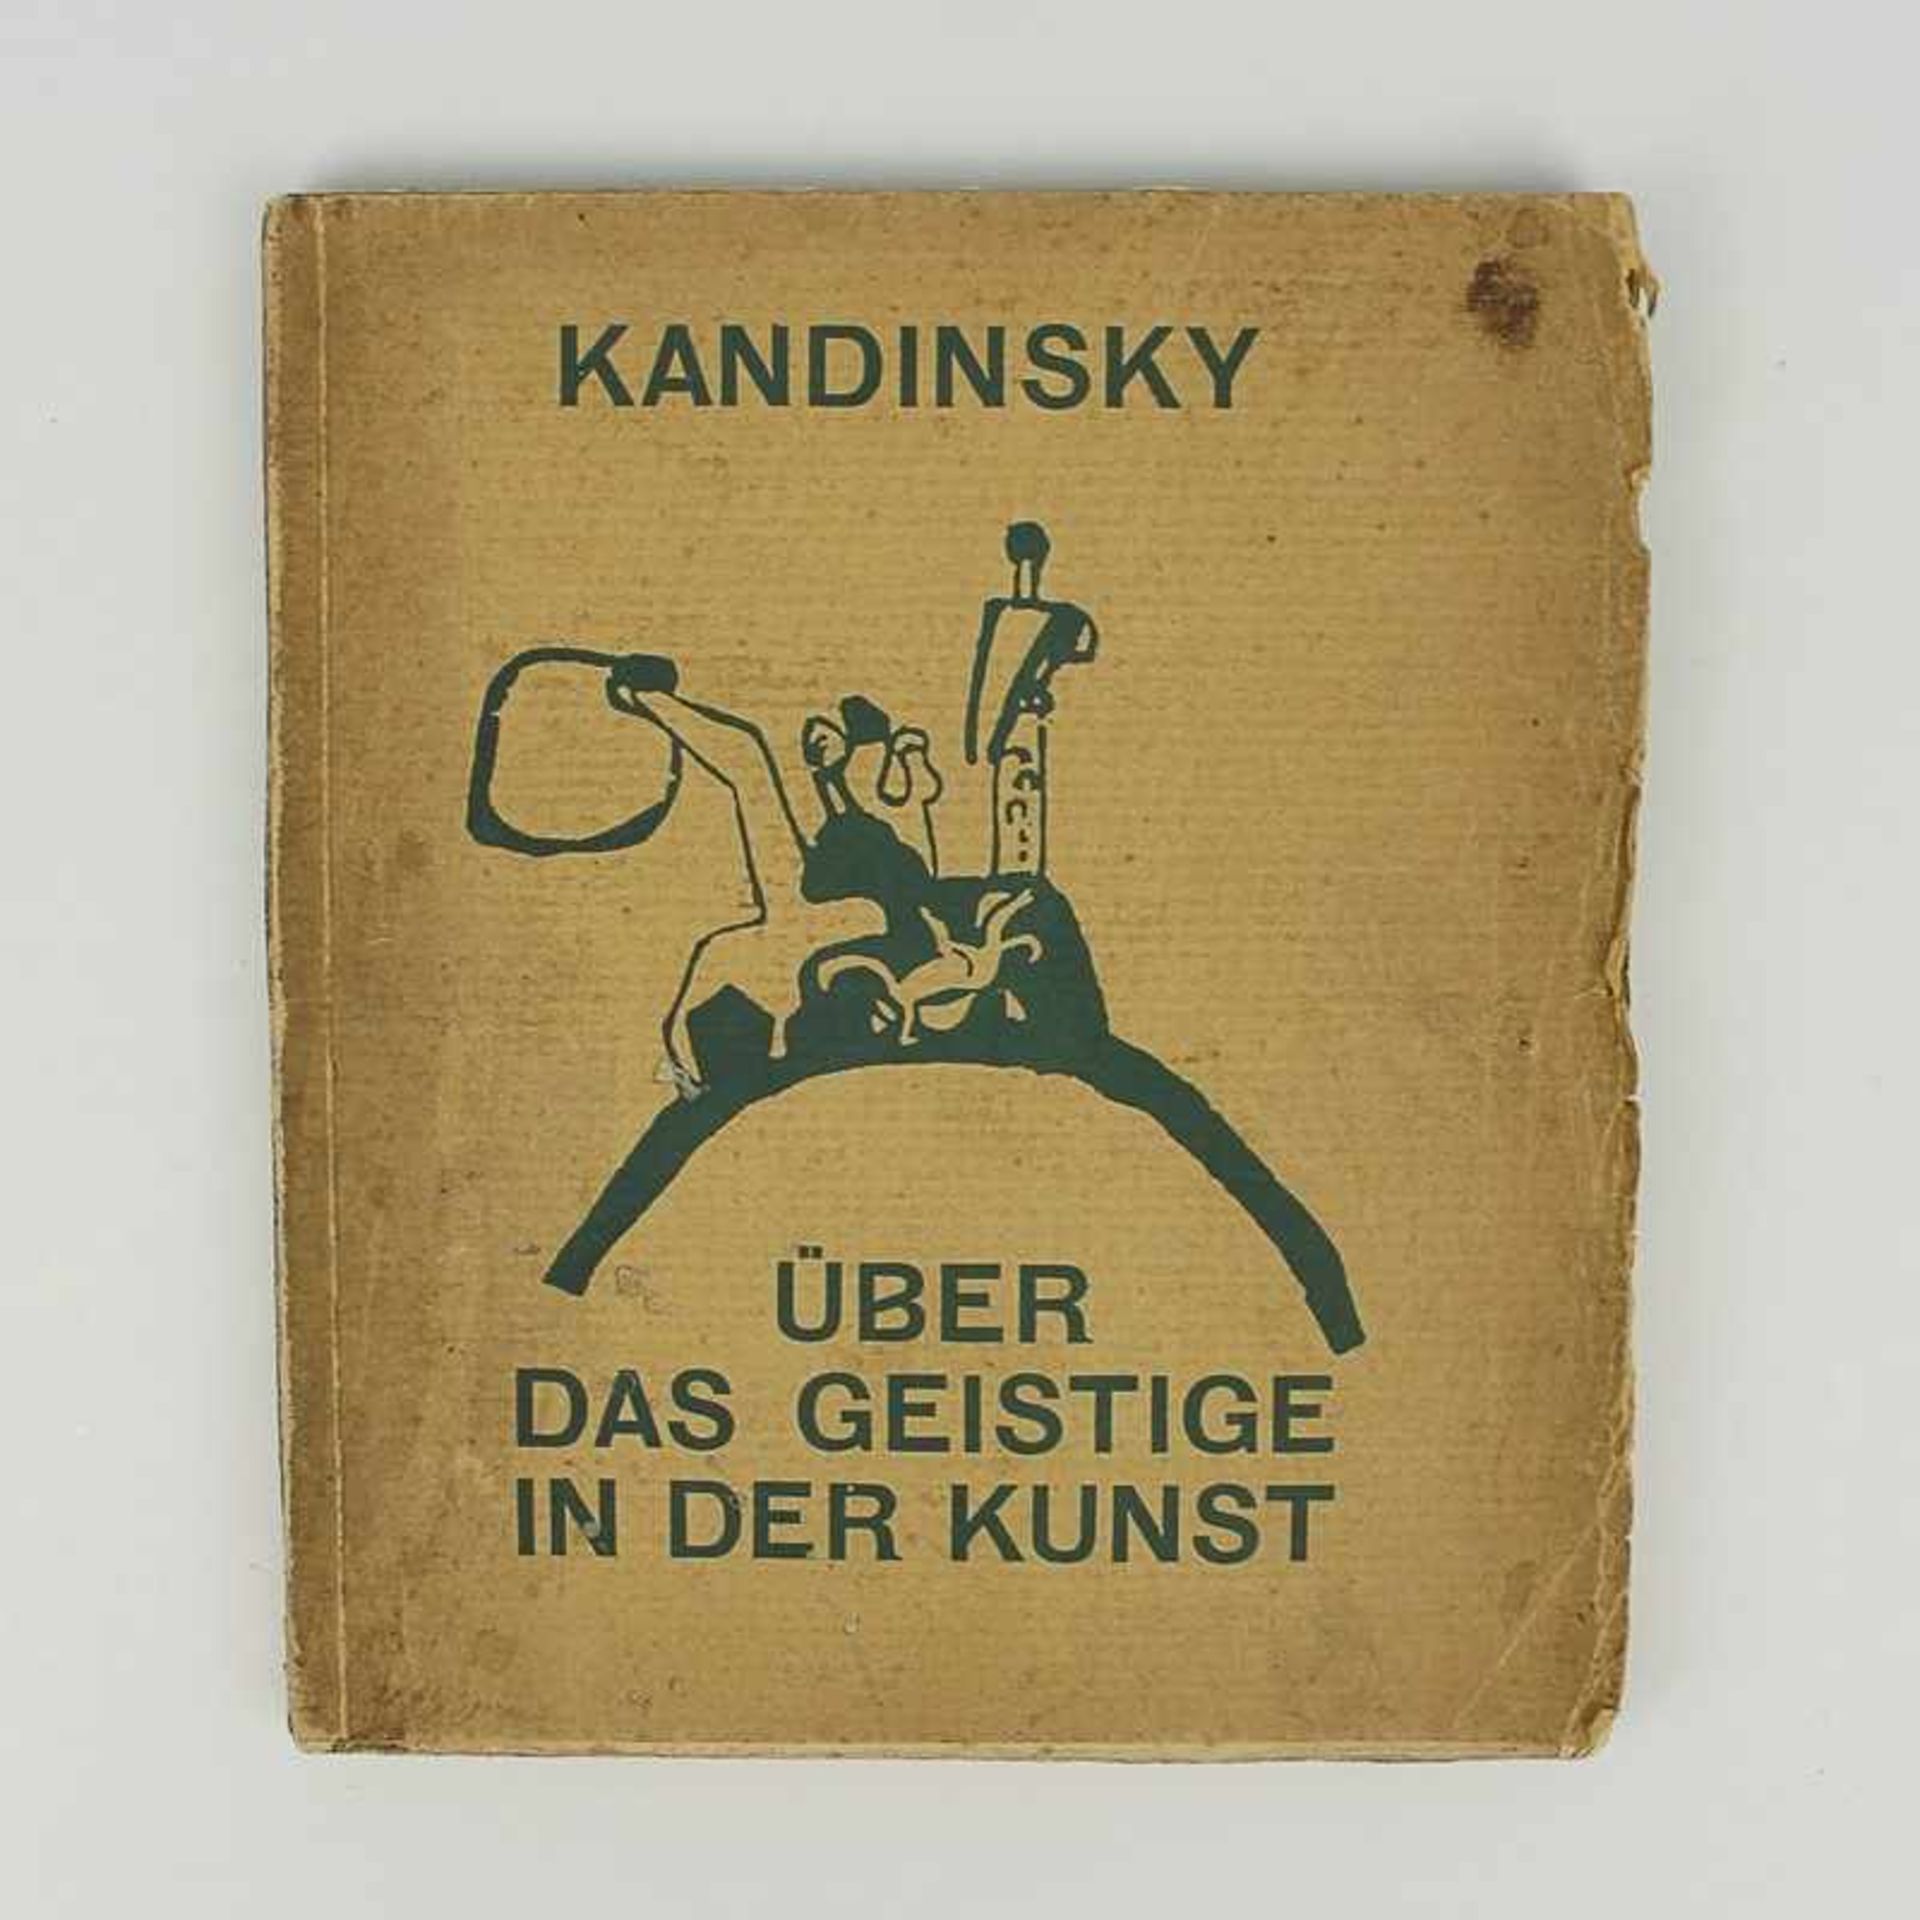 Kandinsky, Wassily russischer Maler, Grafiker und Kunsttheoretiker, Mitbegründer der